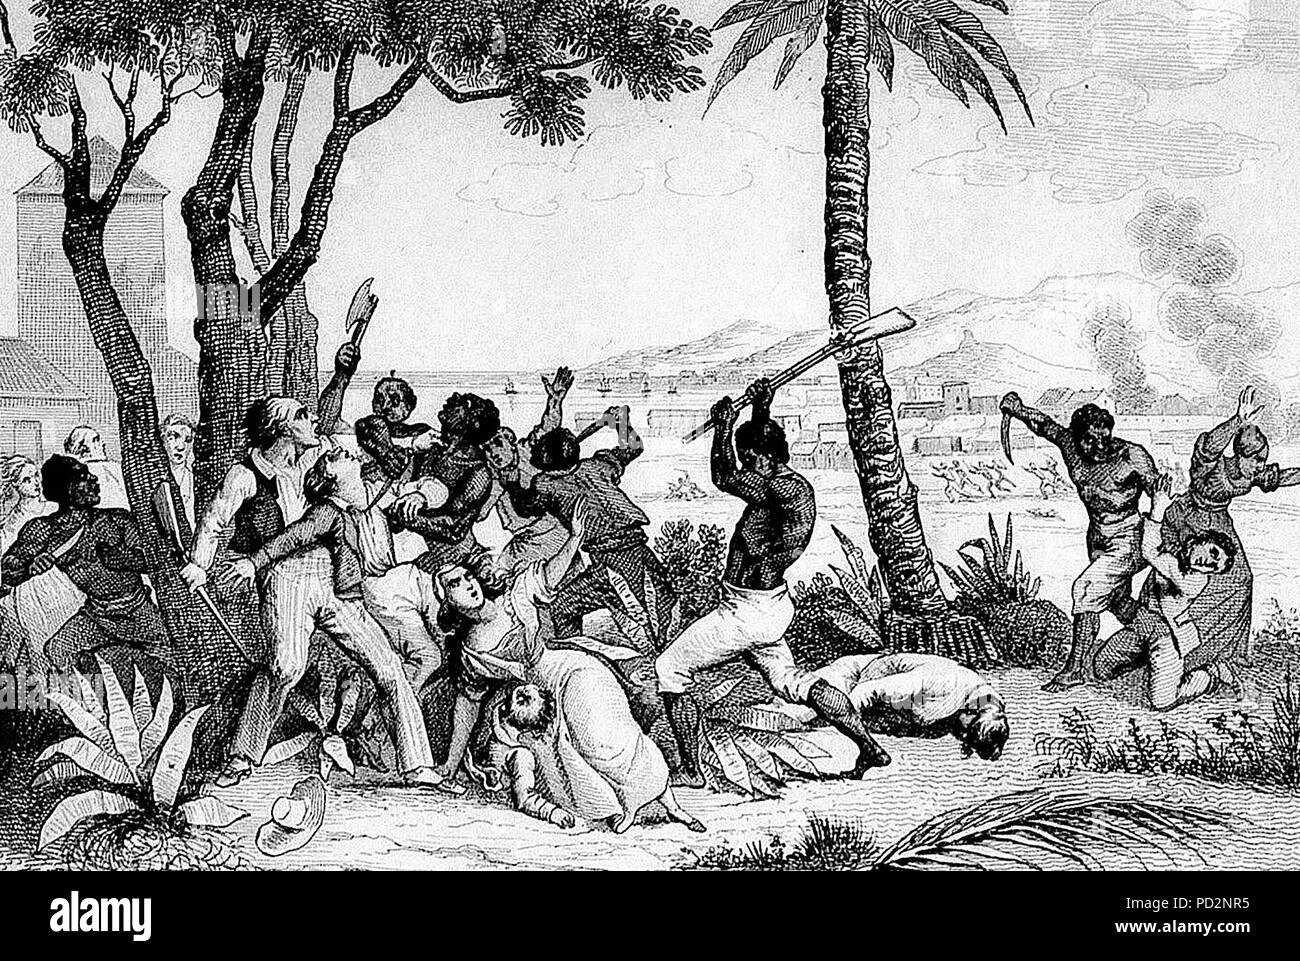 Ribellione Slave del 1791 - la bruciatura della Plaine du Cap - Massacro di bianchi dal neri". Il 22 agosto 1791, schiavi appiccato il fuoco alle piantagioni, bruciate le città e massacrato la popolazione bianca. Foto Stock